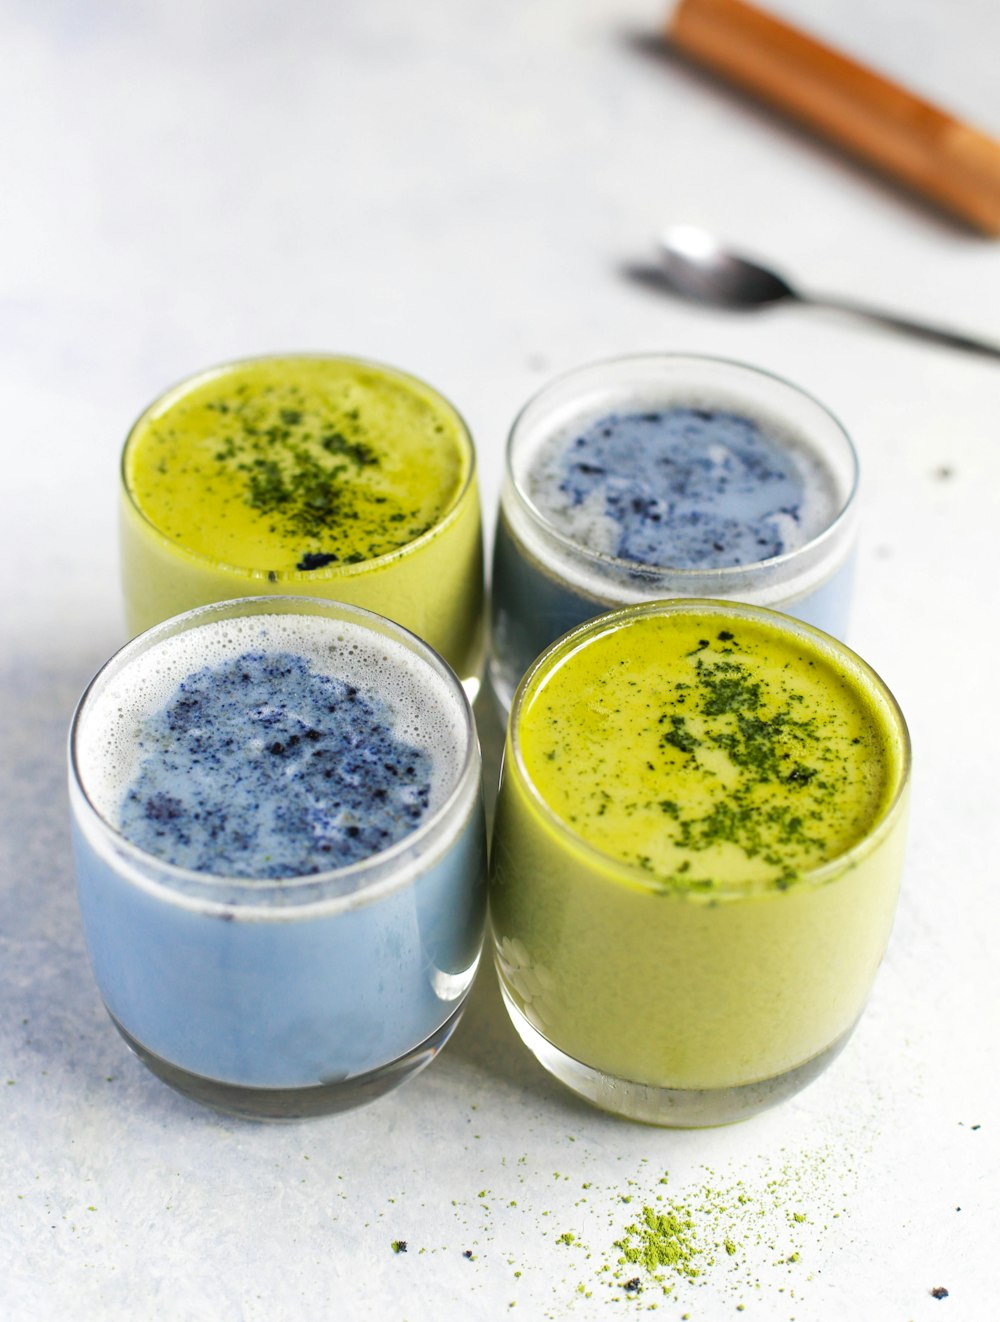 due liquidi verdi e blu in bicchieri